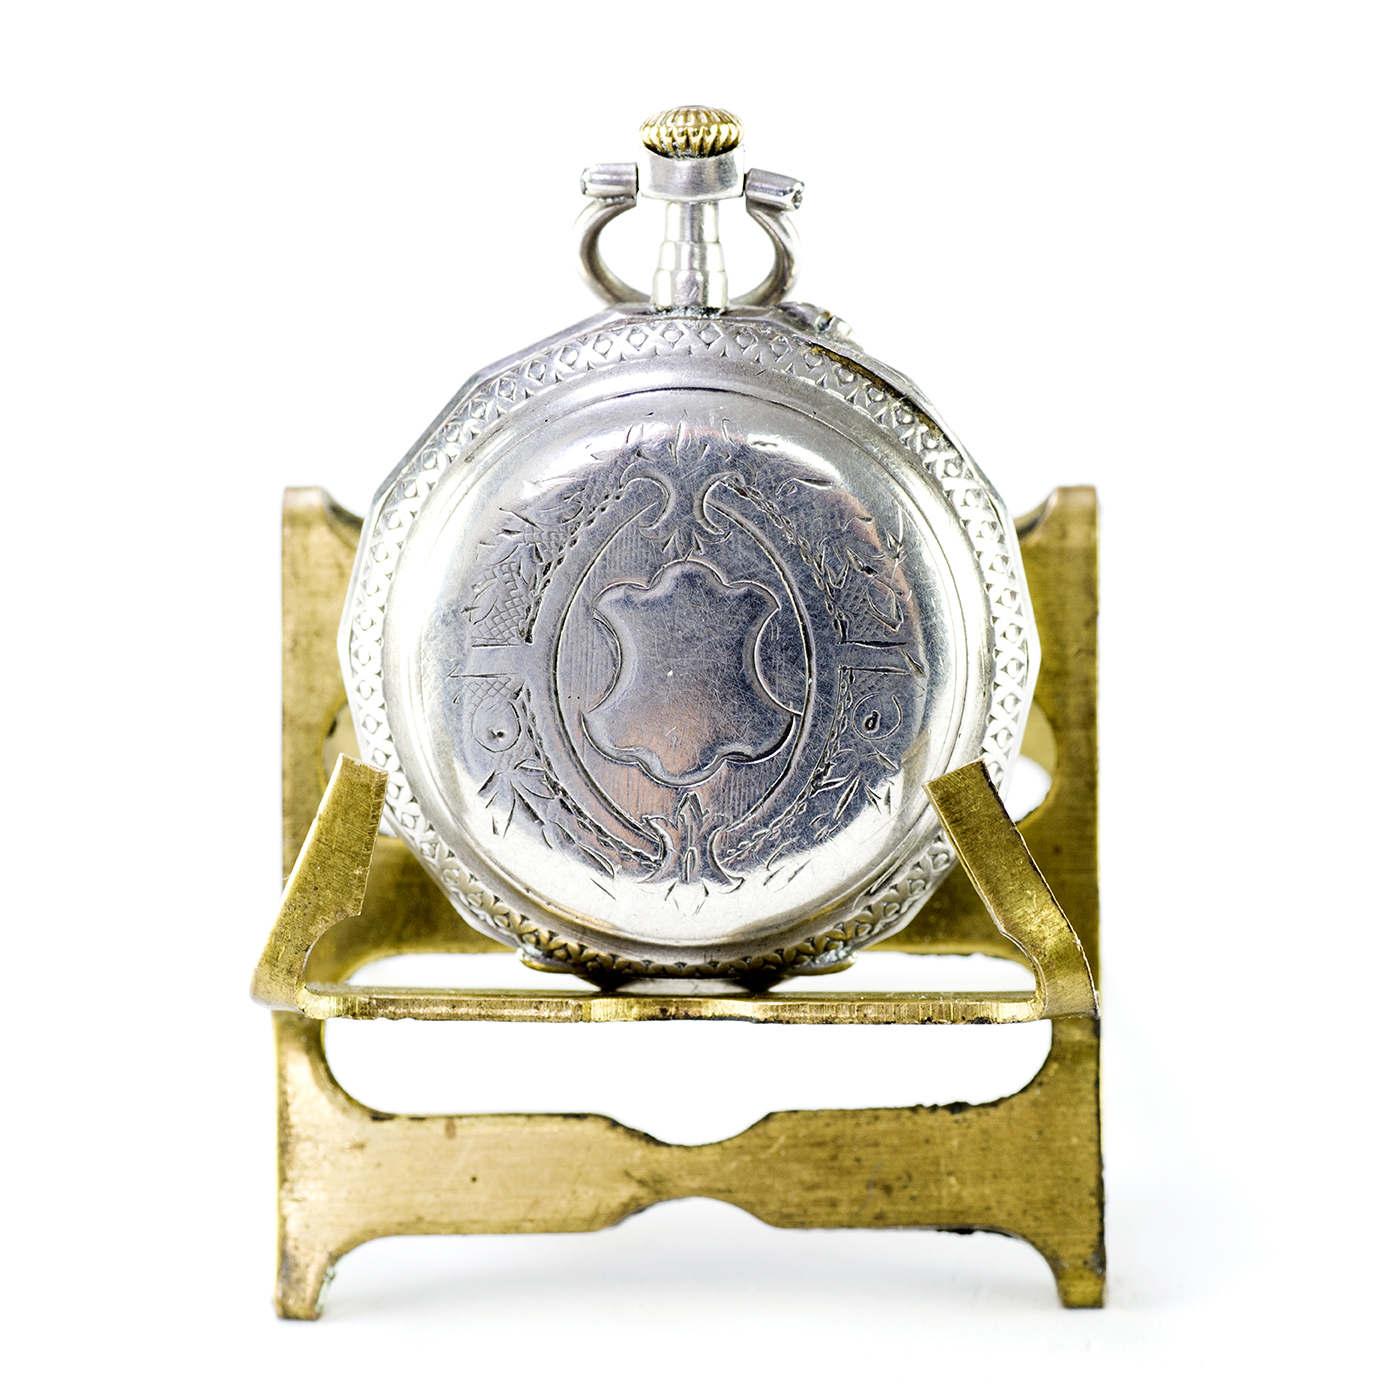 Reloj de colgar, lepine y remontoir. Suiza, ca. 1890